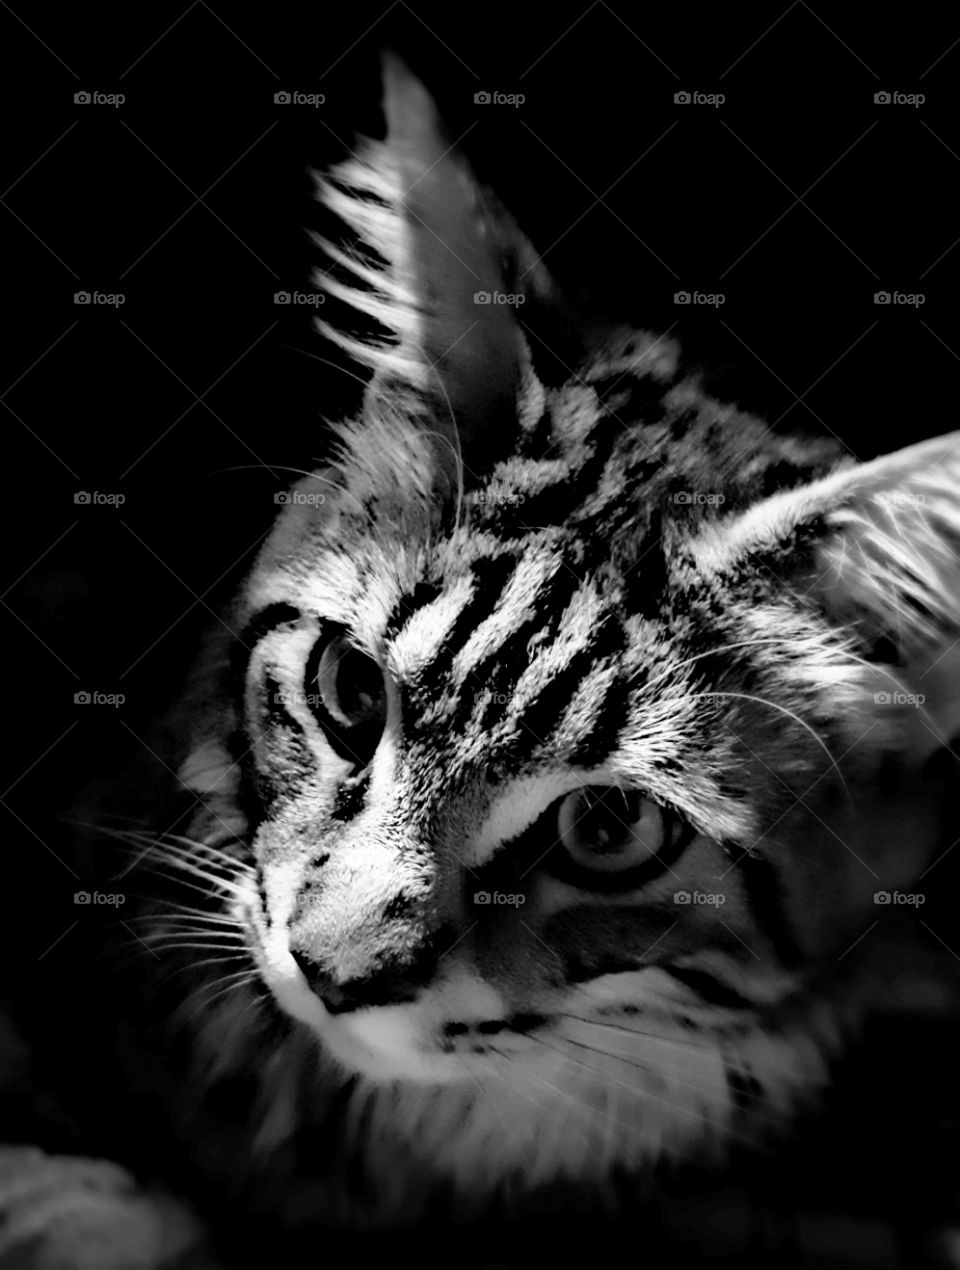 cat. black and white photo.